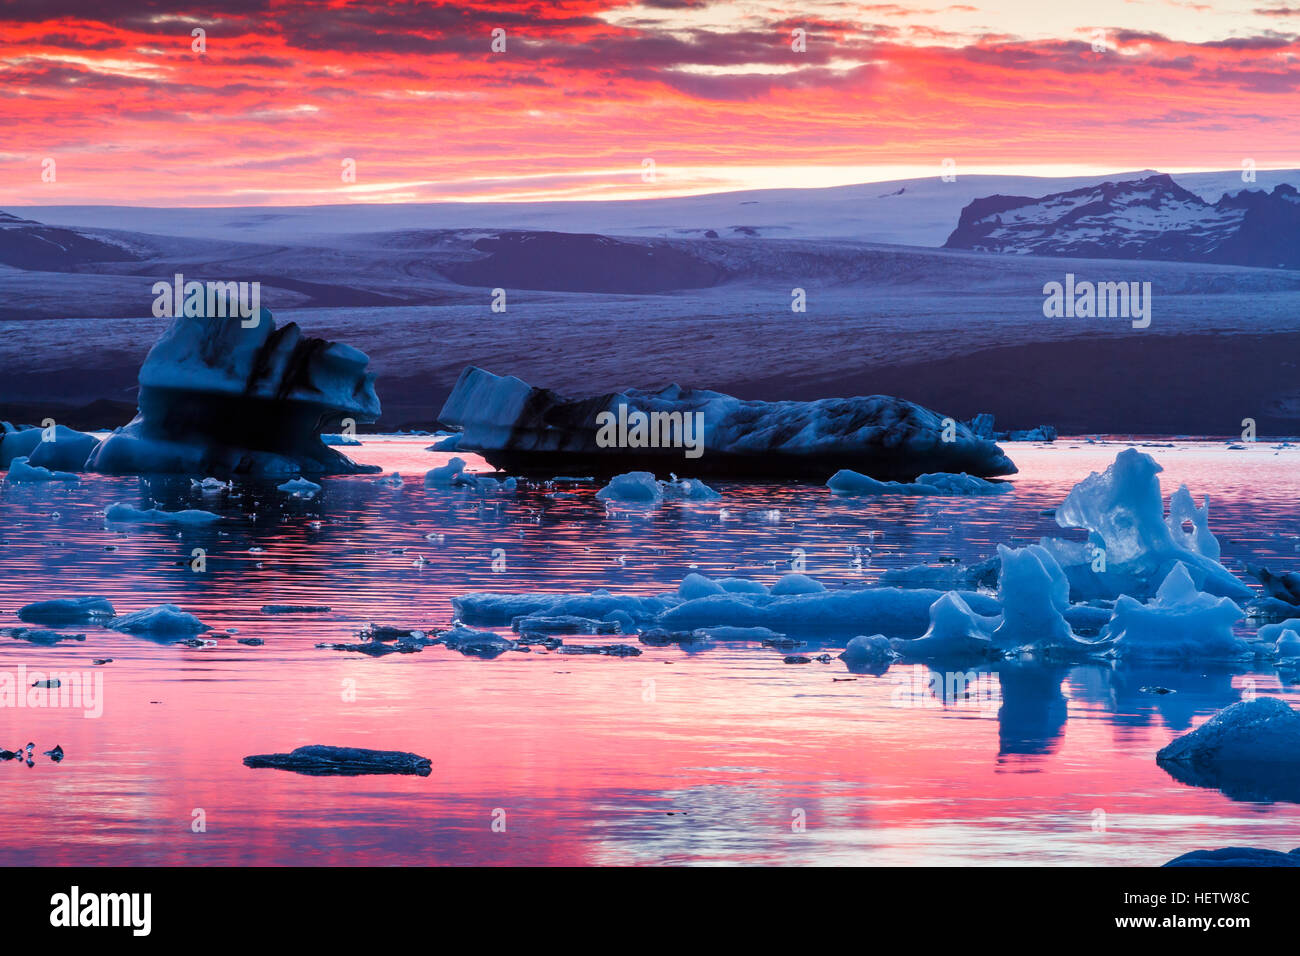 Glacial lake at sunset. Stock Photo